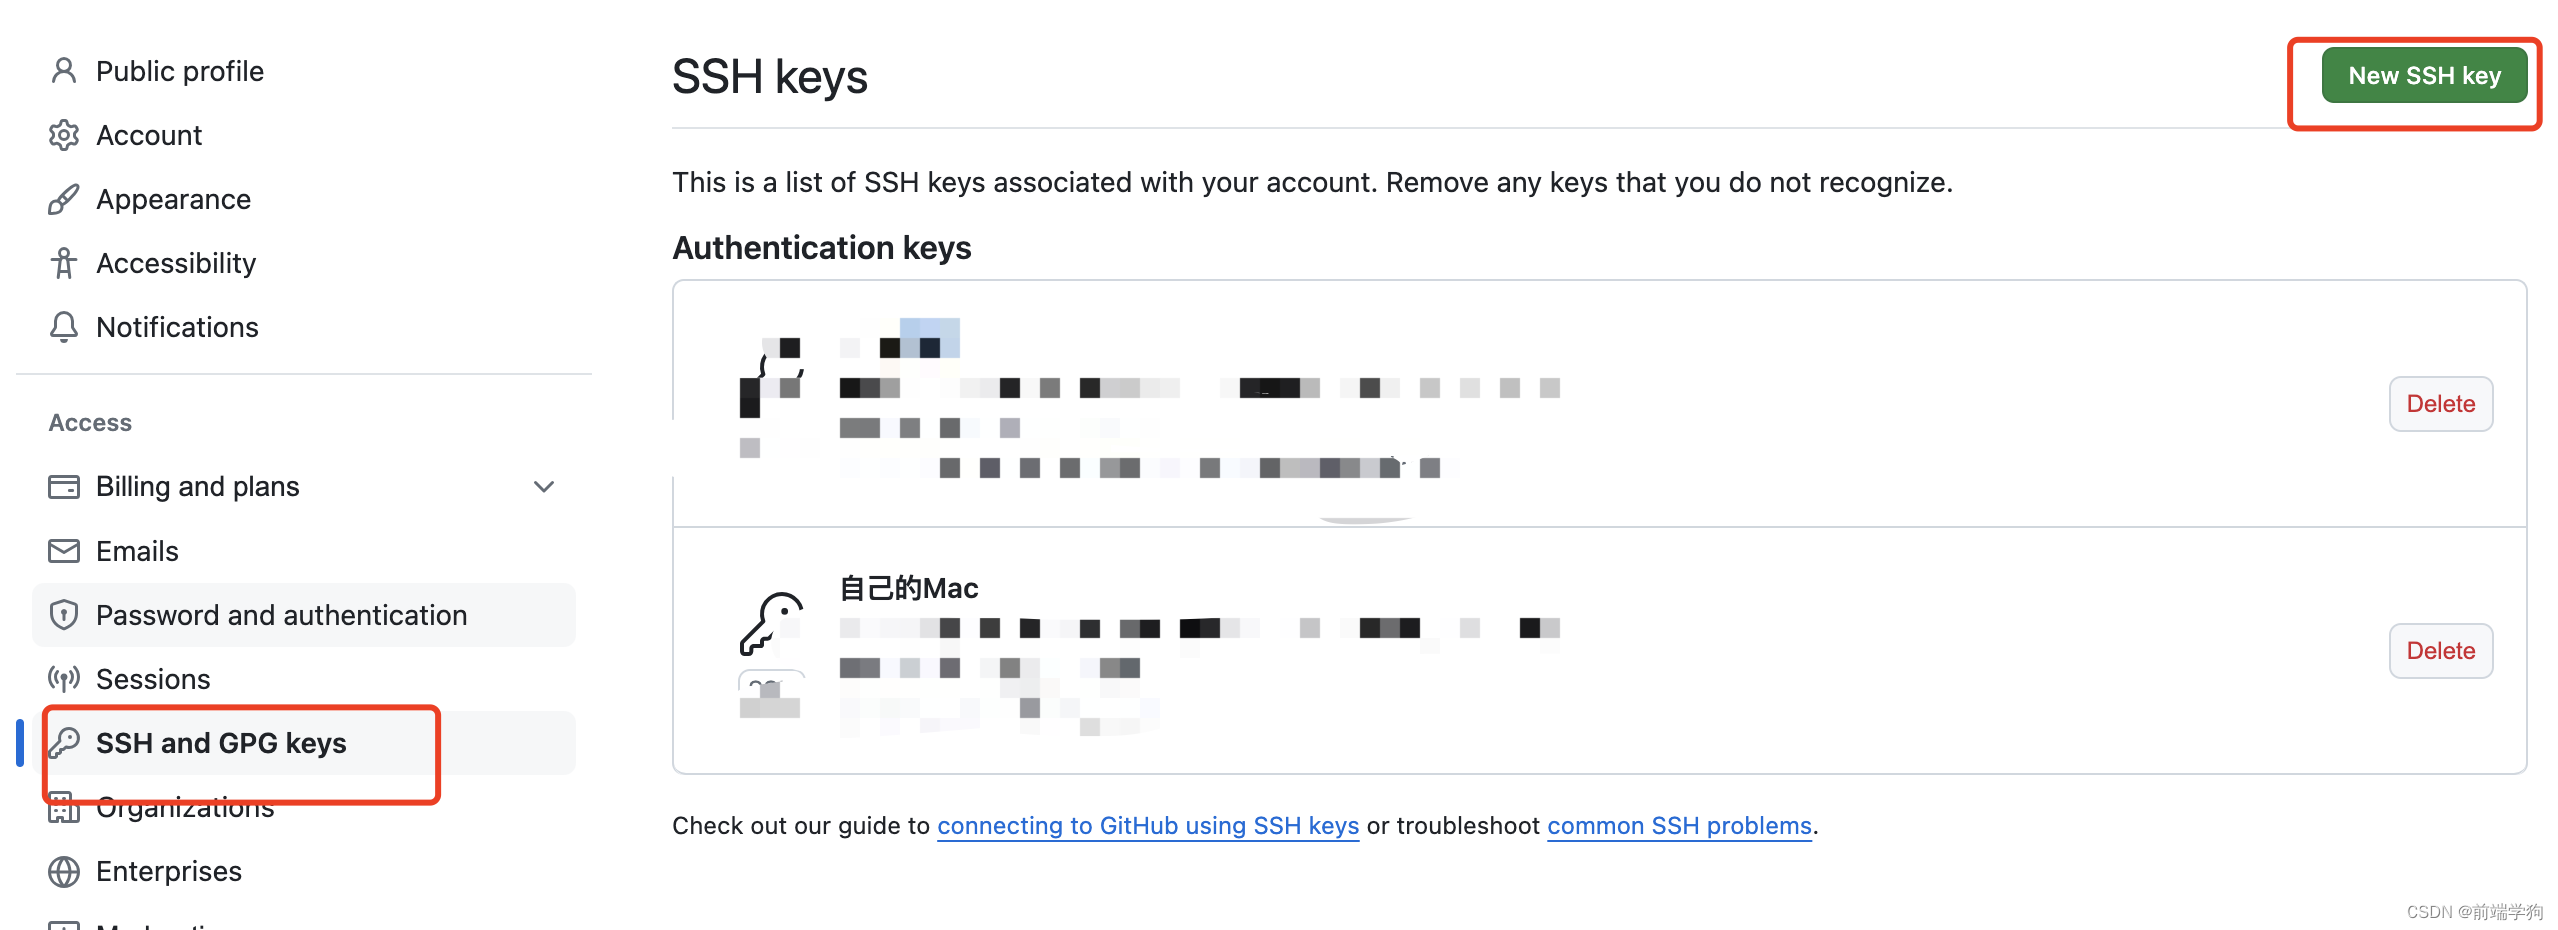 使用 SSH 密钥配置 Git 账号需要以下步骤